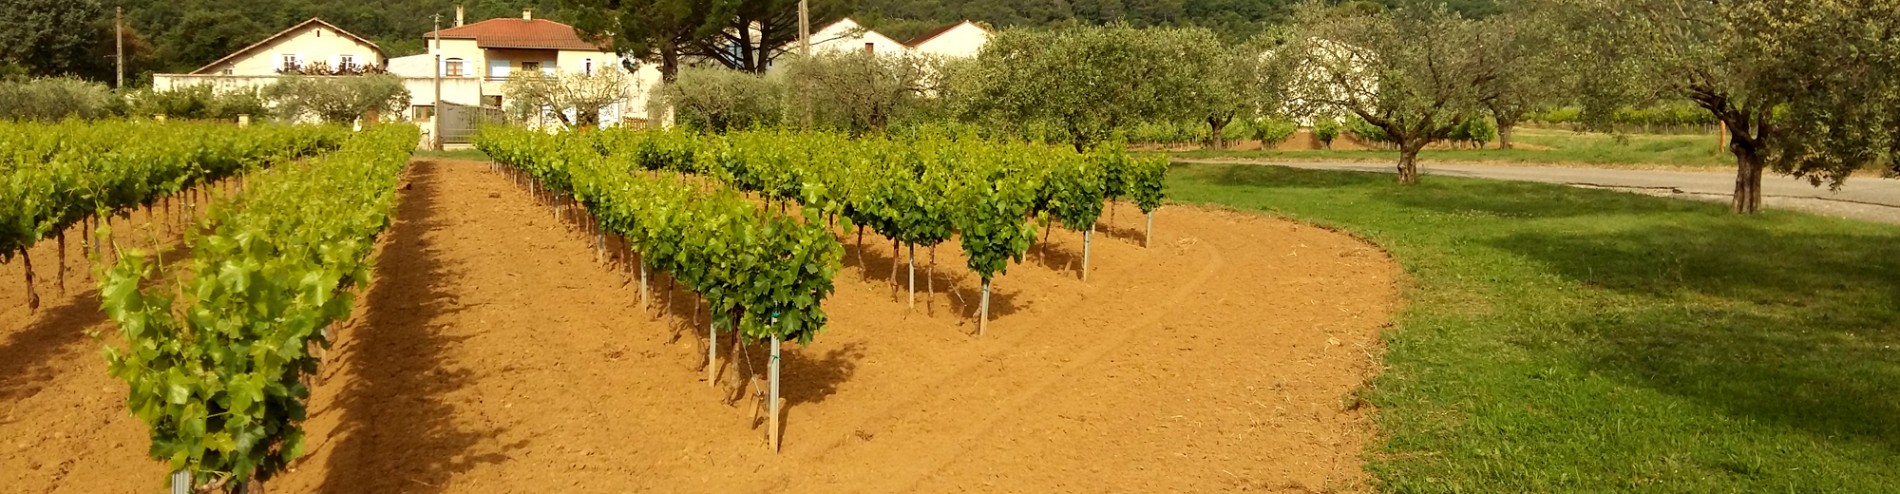 Domaine De Laplagnol vins Côtes du rhône dans le Gard (30)